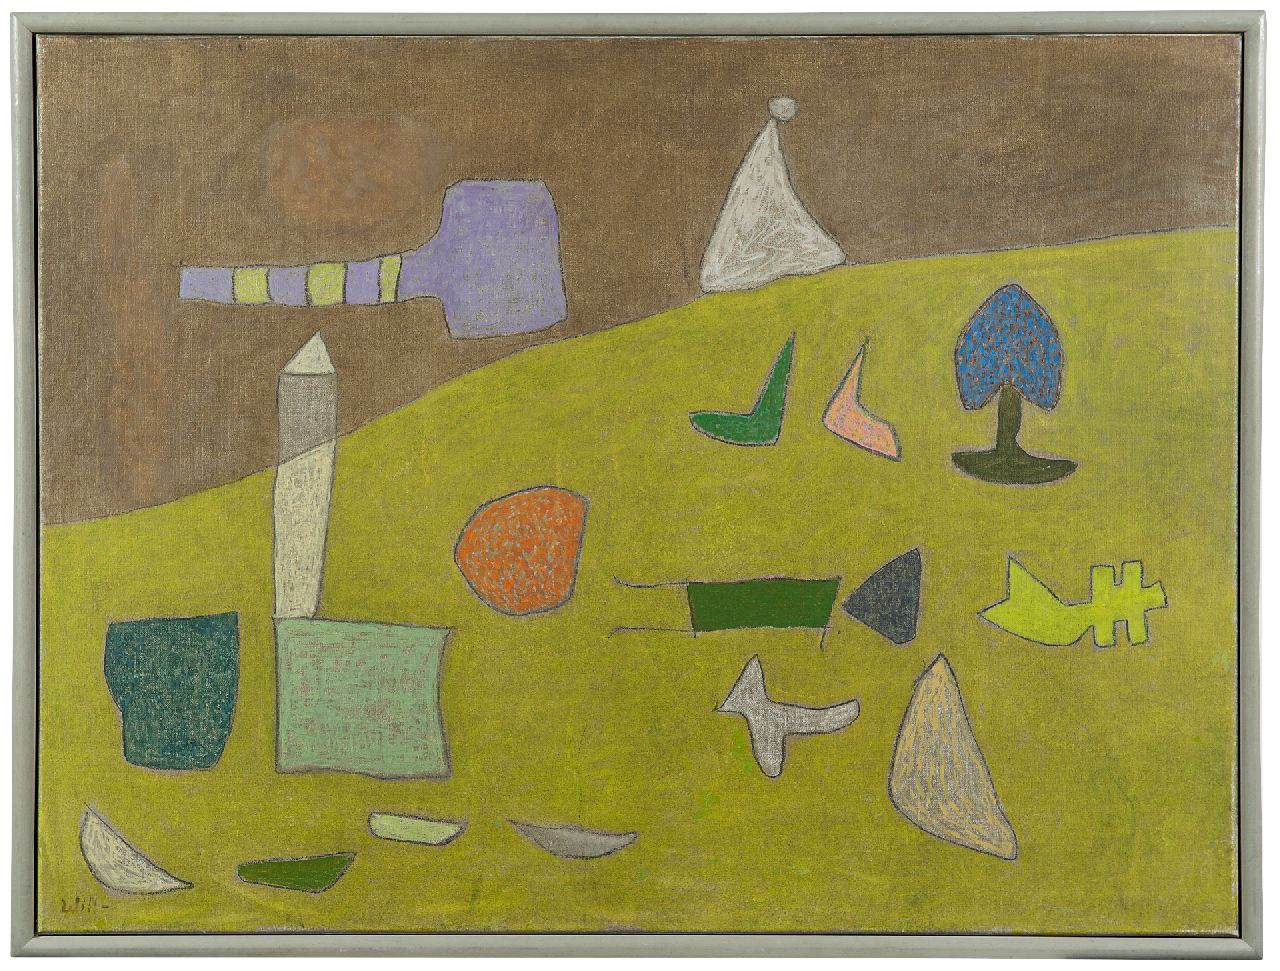 Leewens W.J.  | Willibrordus Joseph 'Will' Leewens | Schilderijen te koop aangeboden | Figuren in groen landschap, olieverf op doek 60,1 x 80,1 cm, gesigneerd linksonder